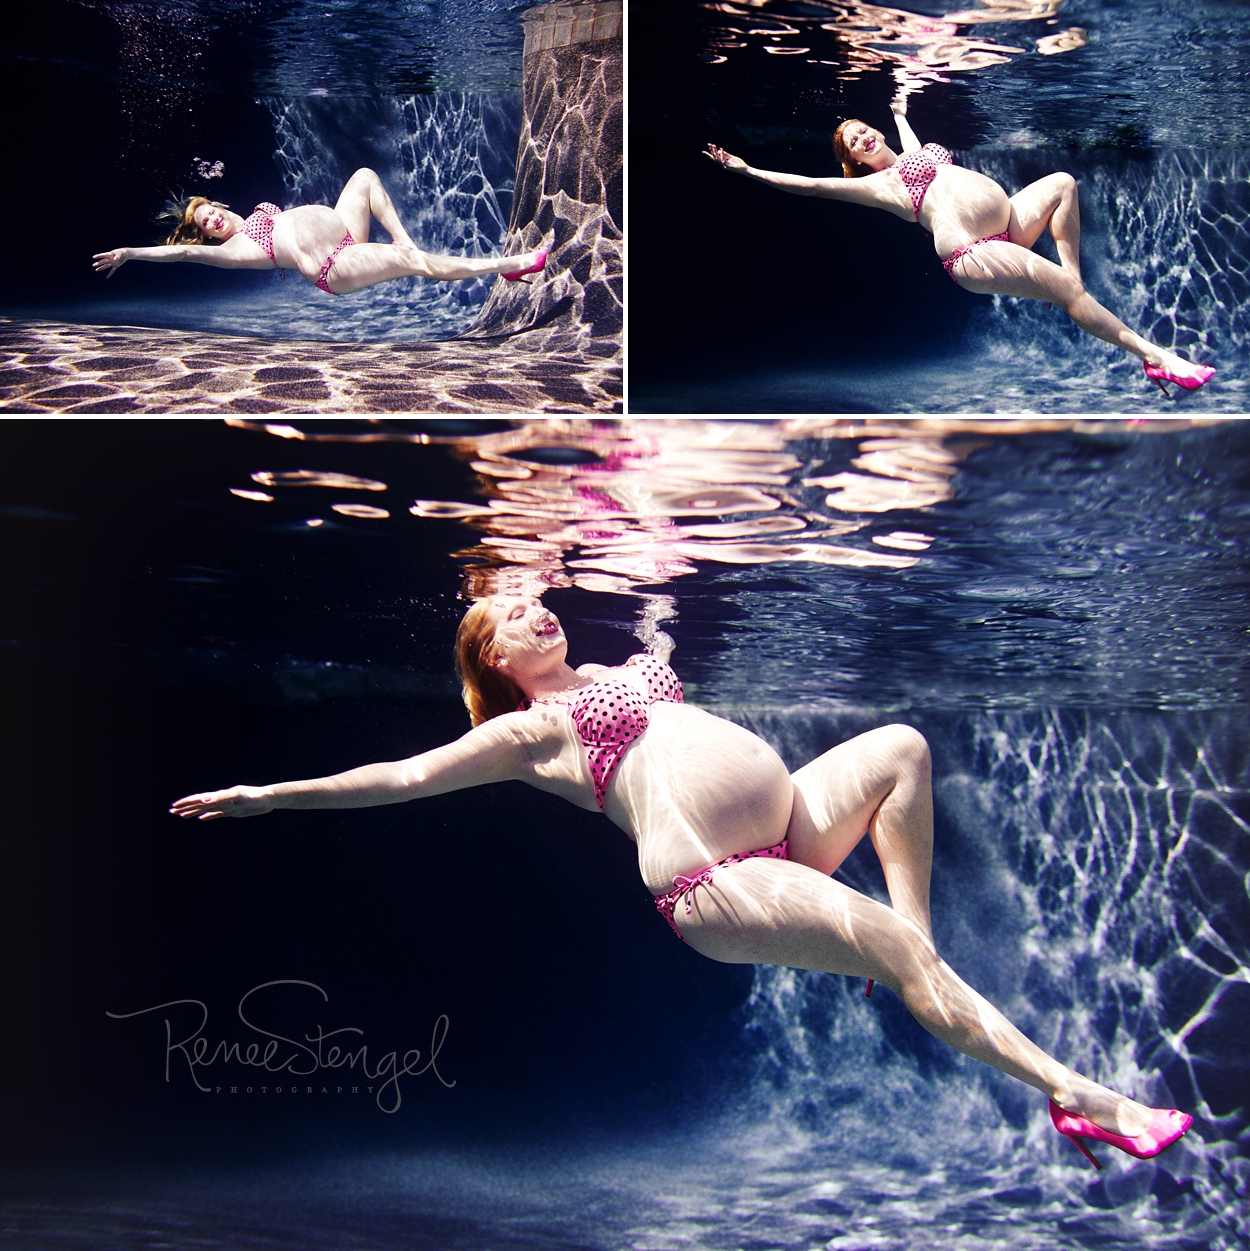 RENEE STENGEL Photography | Charlotte Portrait and Underwater Photographer | Underwater Maternity Pink Polka Dot Bikini